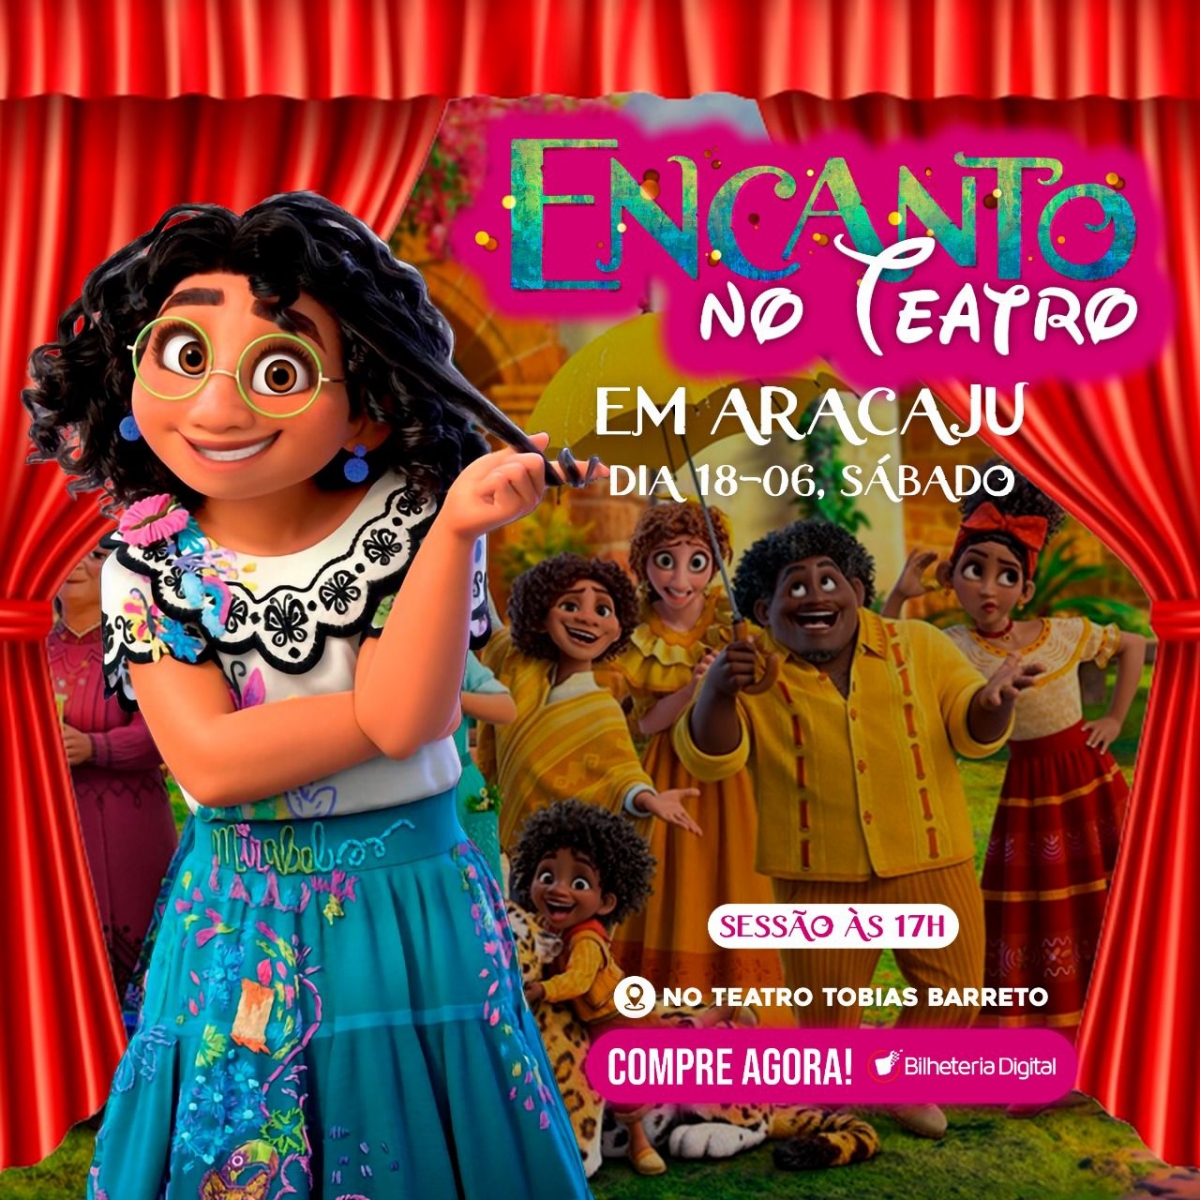 Sucesso da Disney, peça infantil "Encanto" será realizada neste sábado em Aracaju - Imagem: Divulgação